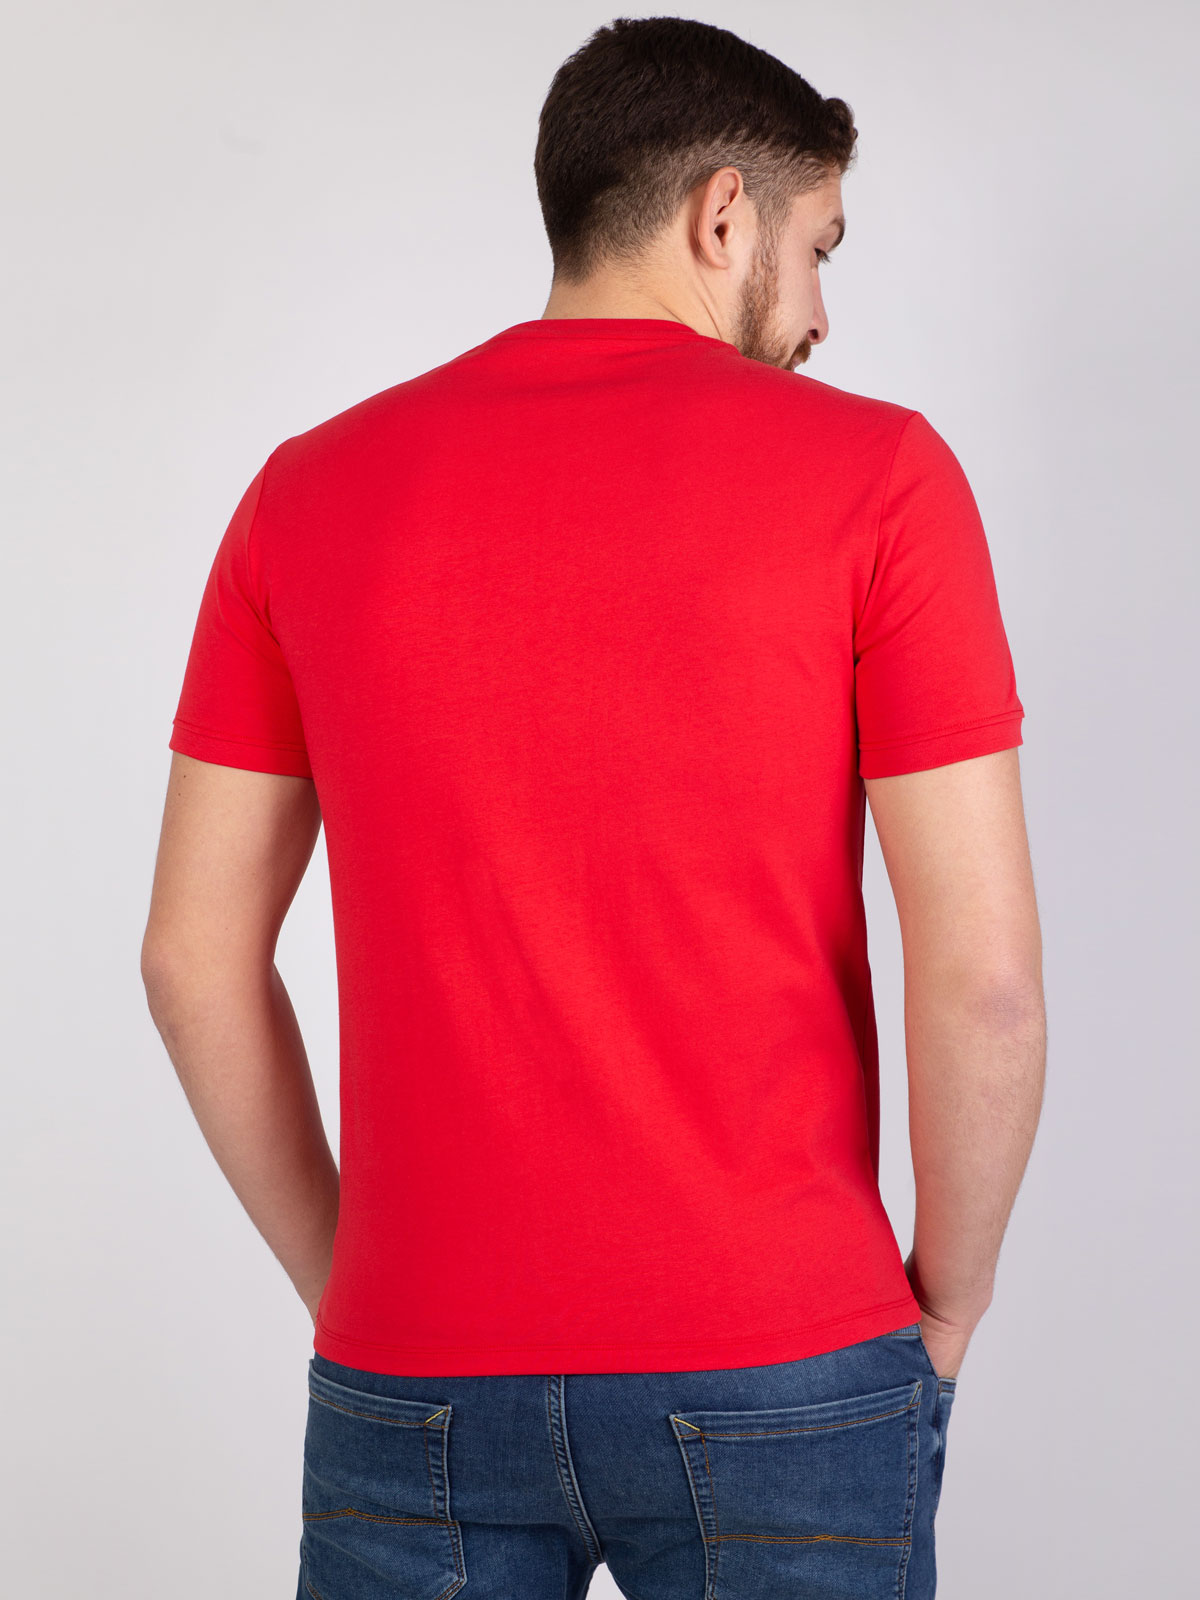 Tricou roșu cu imprimeu albastru - 96389 € 12.37 img4